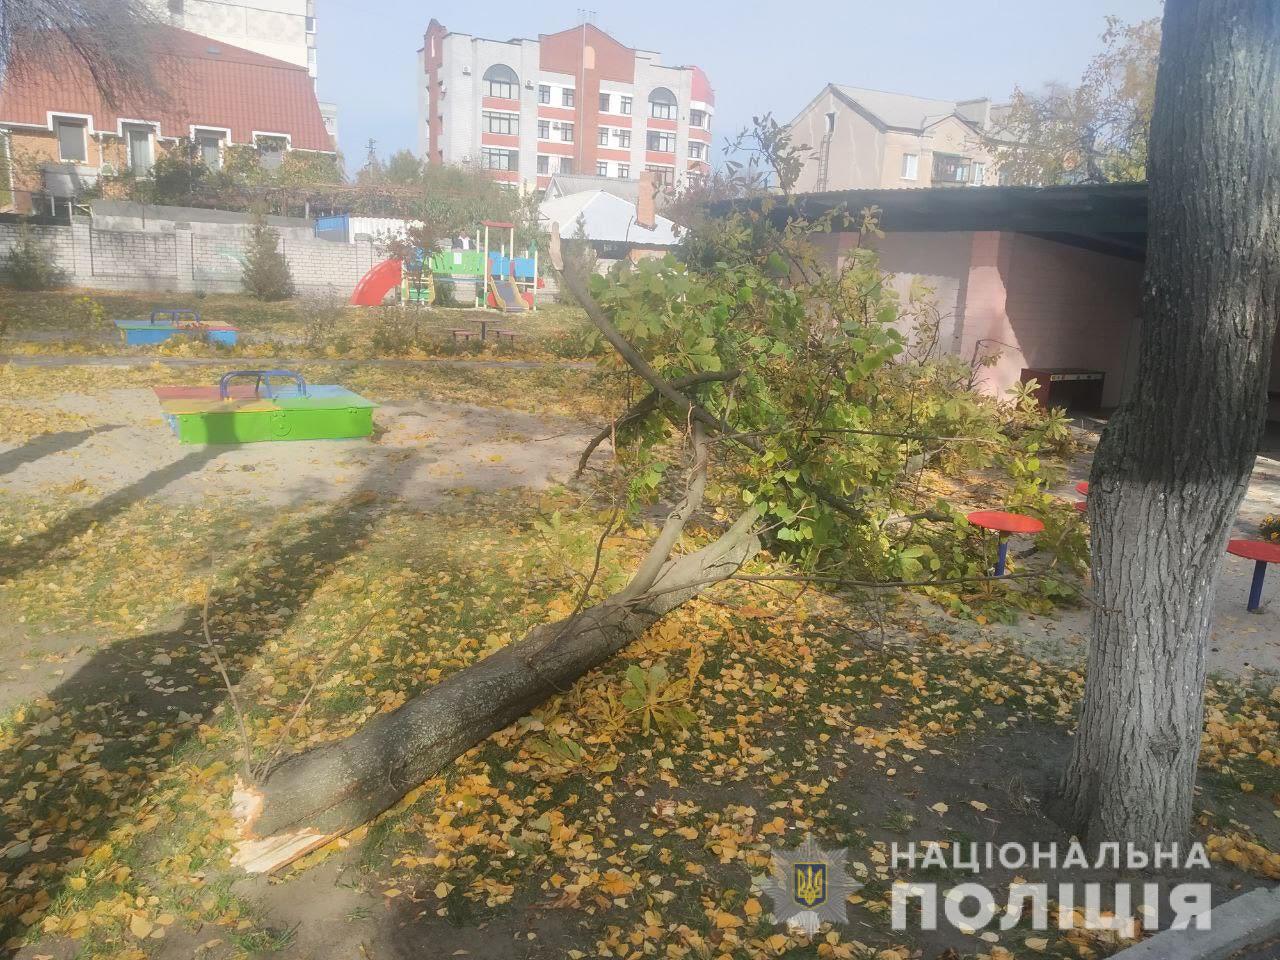 У дитсадку Кременчука на двох дітей впало дерево, їх госпіталізували